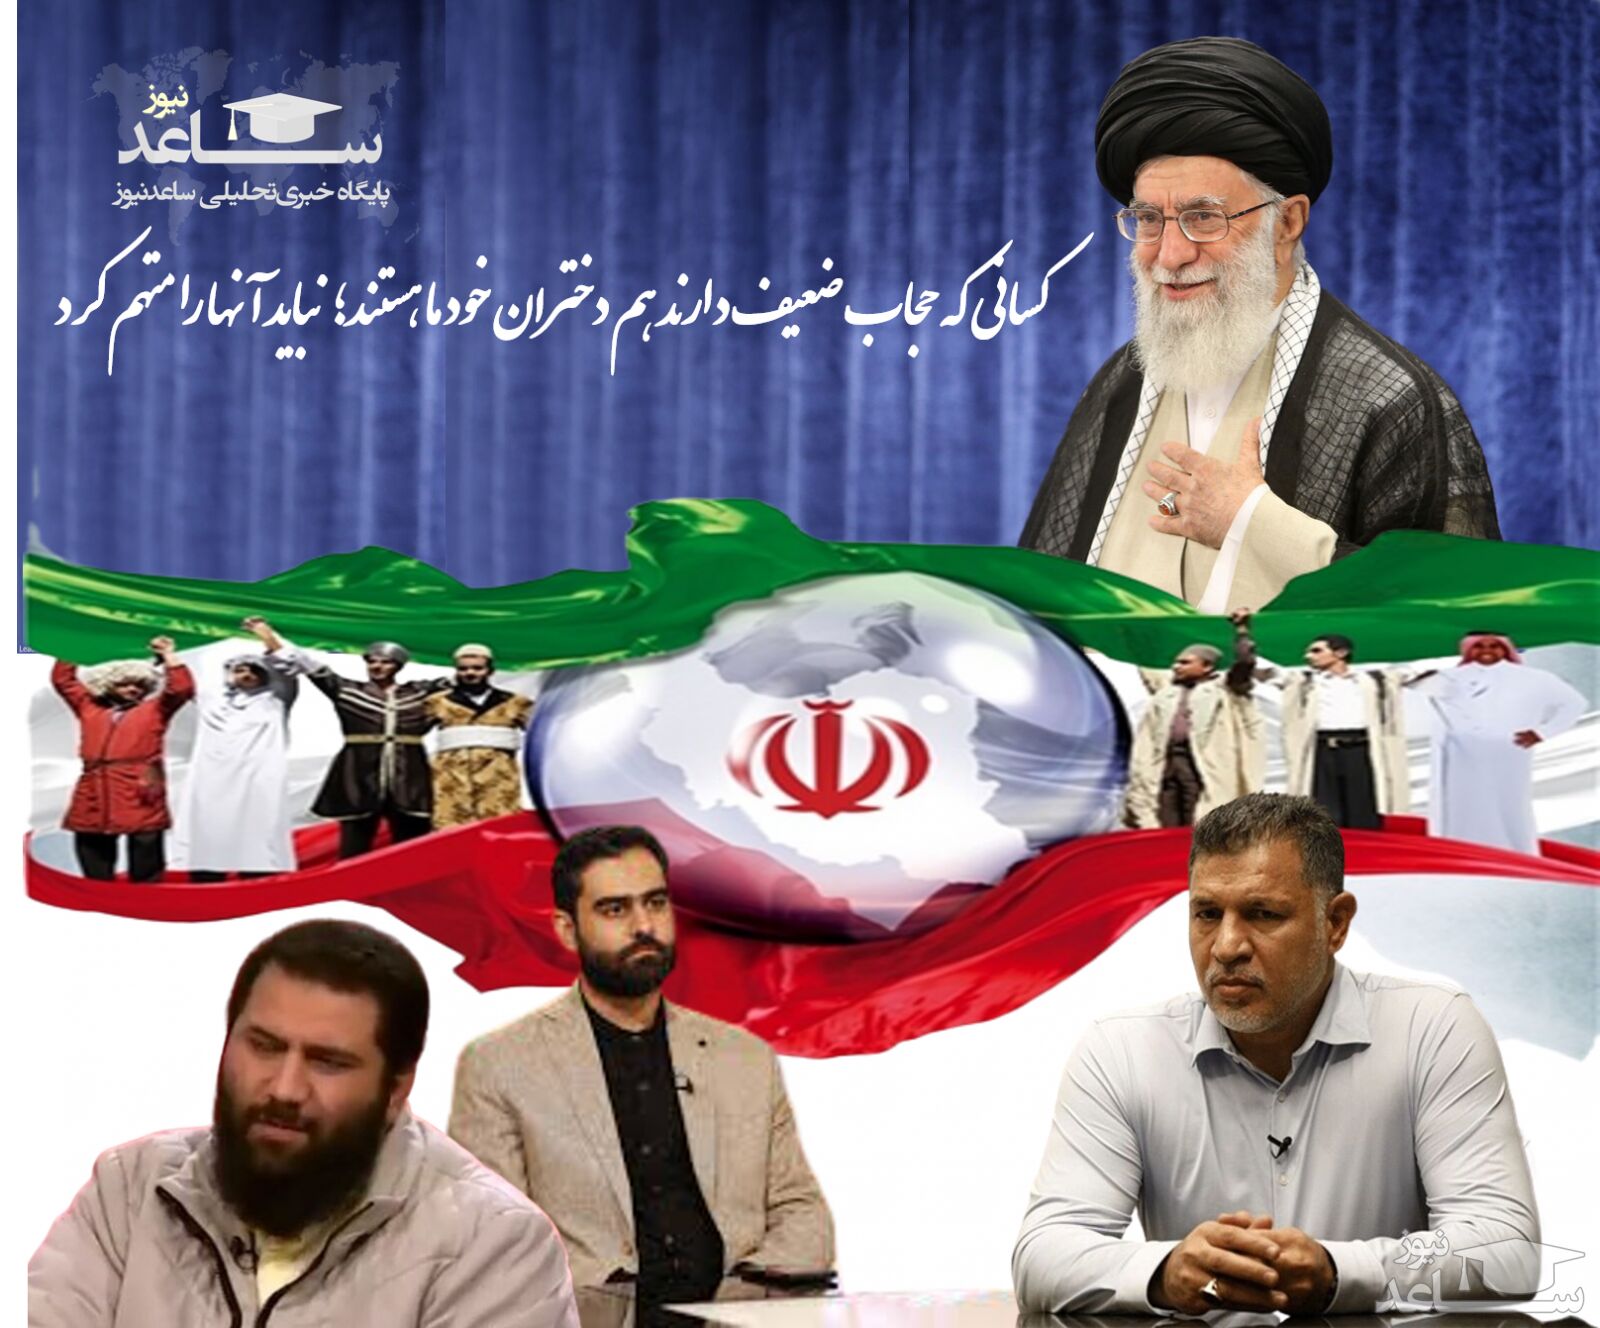 "جهان آرا" پای ثابت آرایش صحنه برای پاره پاره شدن ایران؟